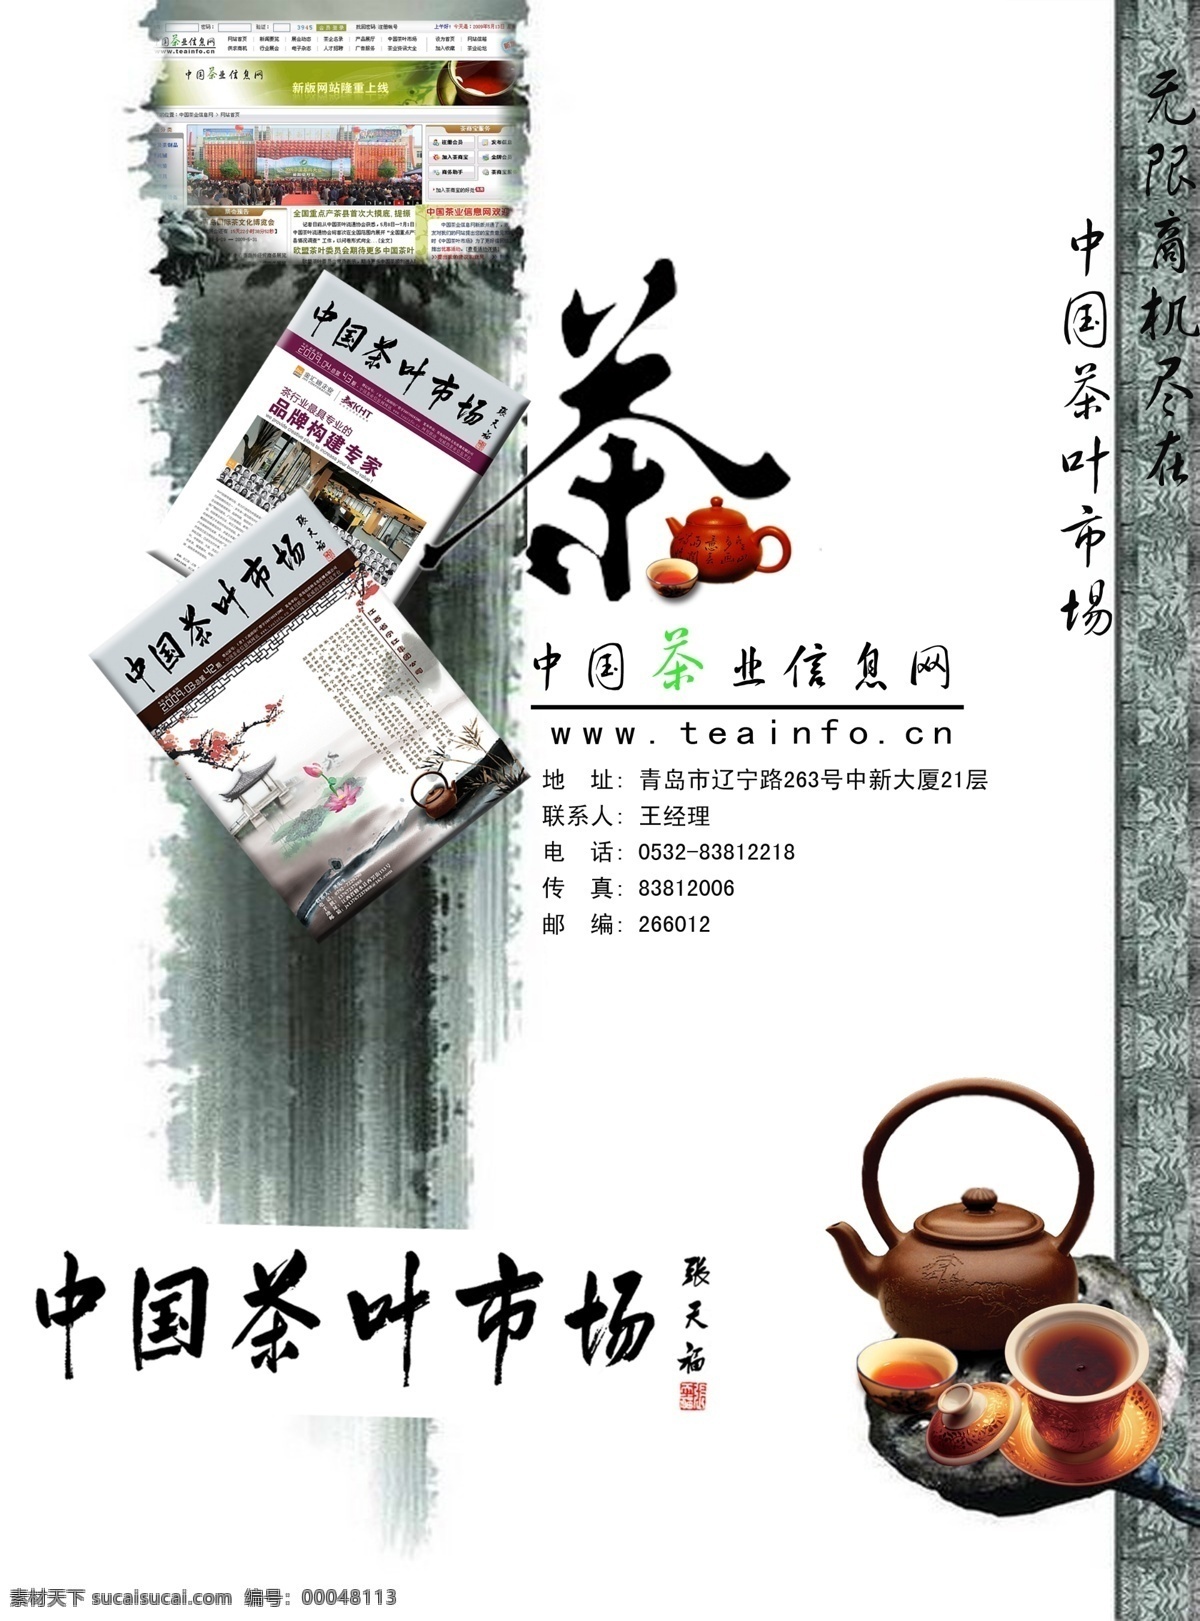 广告设计模板 源文件 茶叶 信息 网站 海报 模板下载 中国 网站形象海报 茶叶网站 紫砂壶海报 其他海报设计